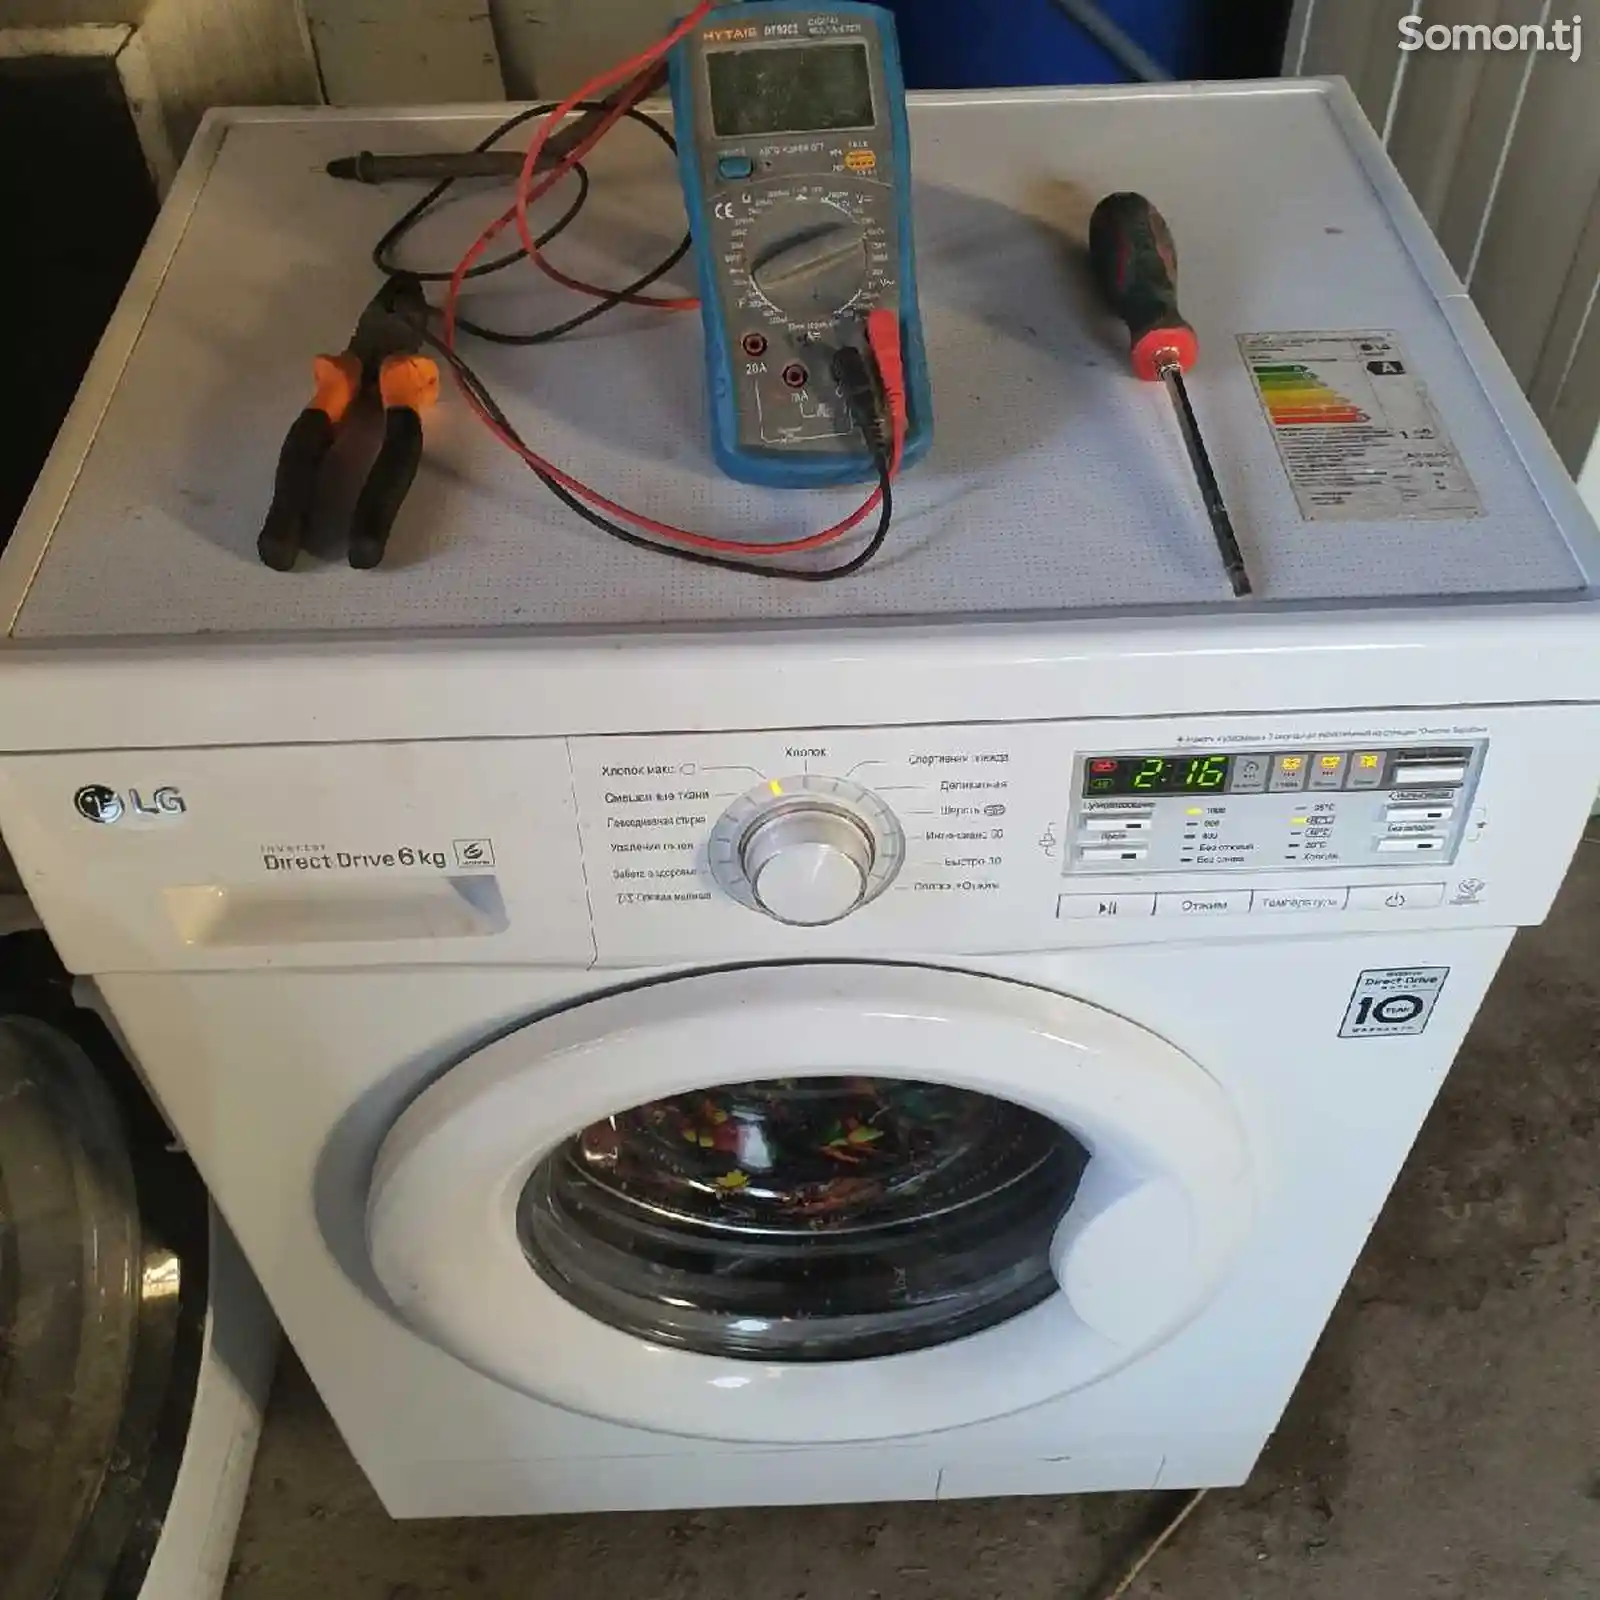 Услуги по ремонту стиральных машин-1